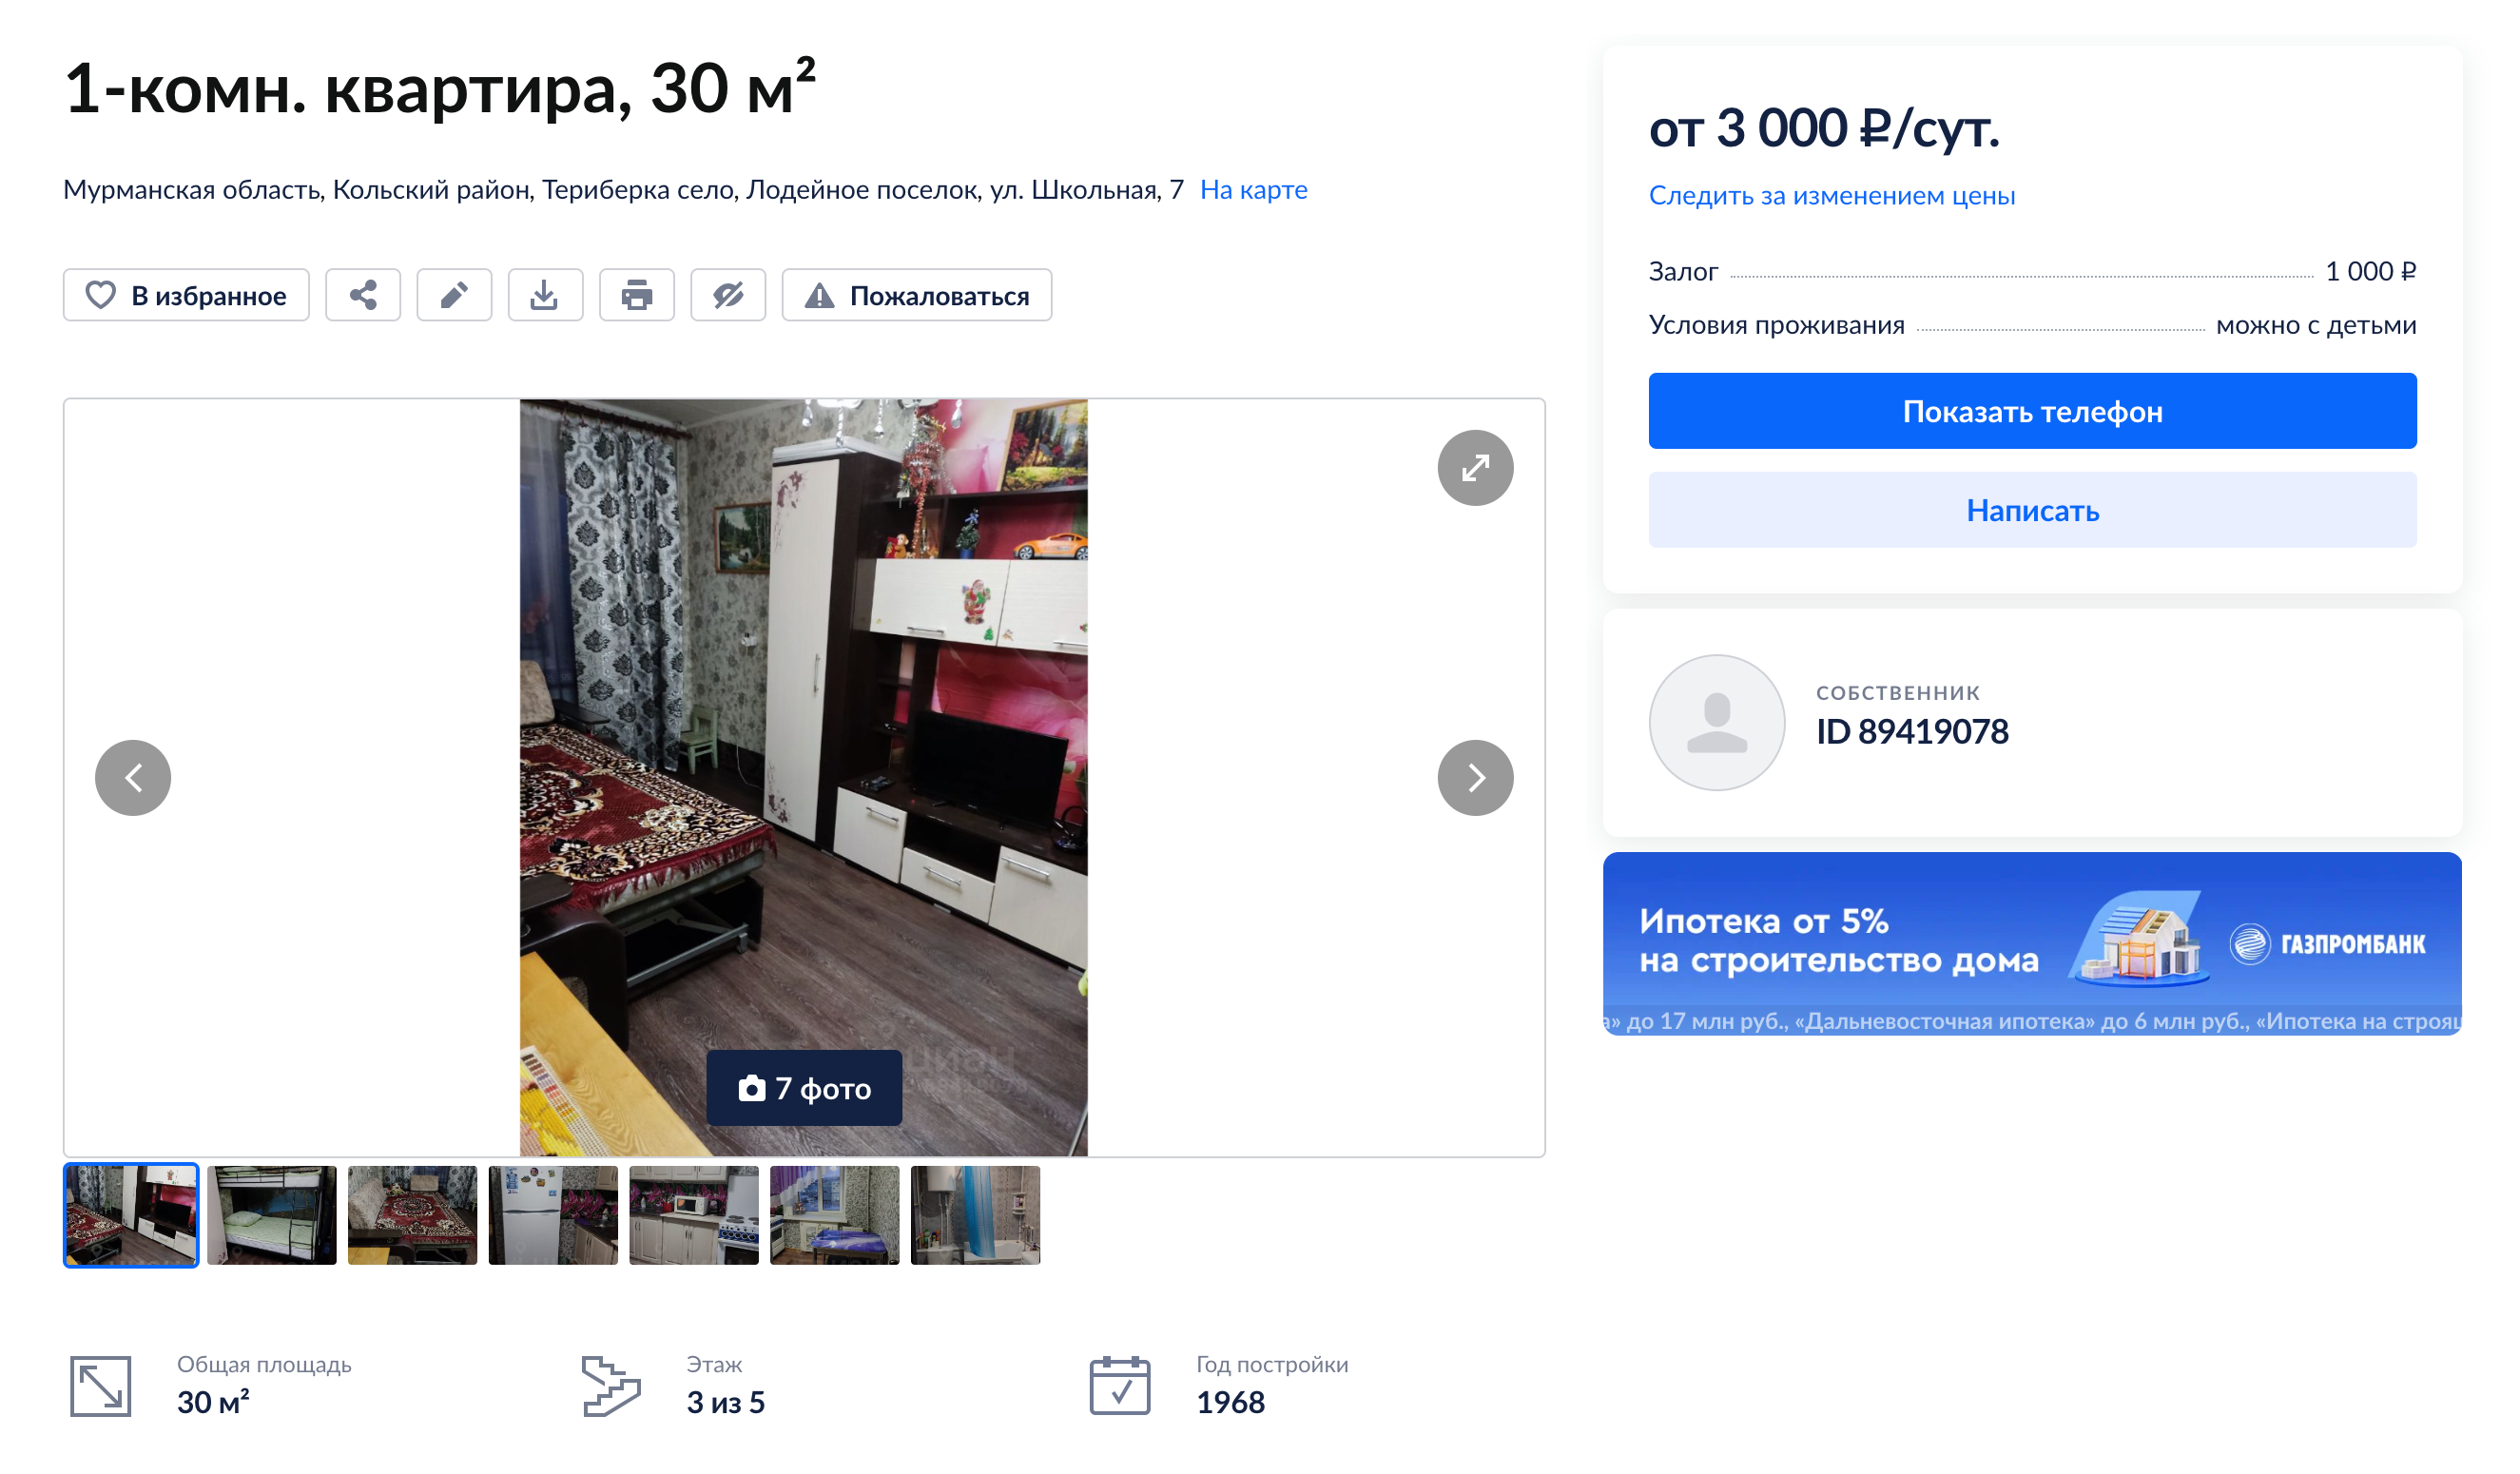 Обычная квартира без излишеств на семью от четырех человек стоит 3000 ₽ в сутки. Источник: cian.ru